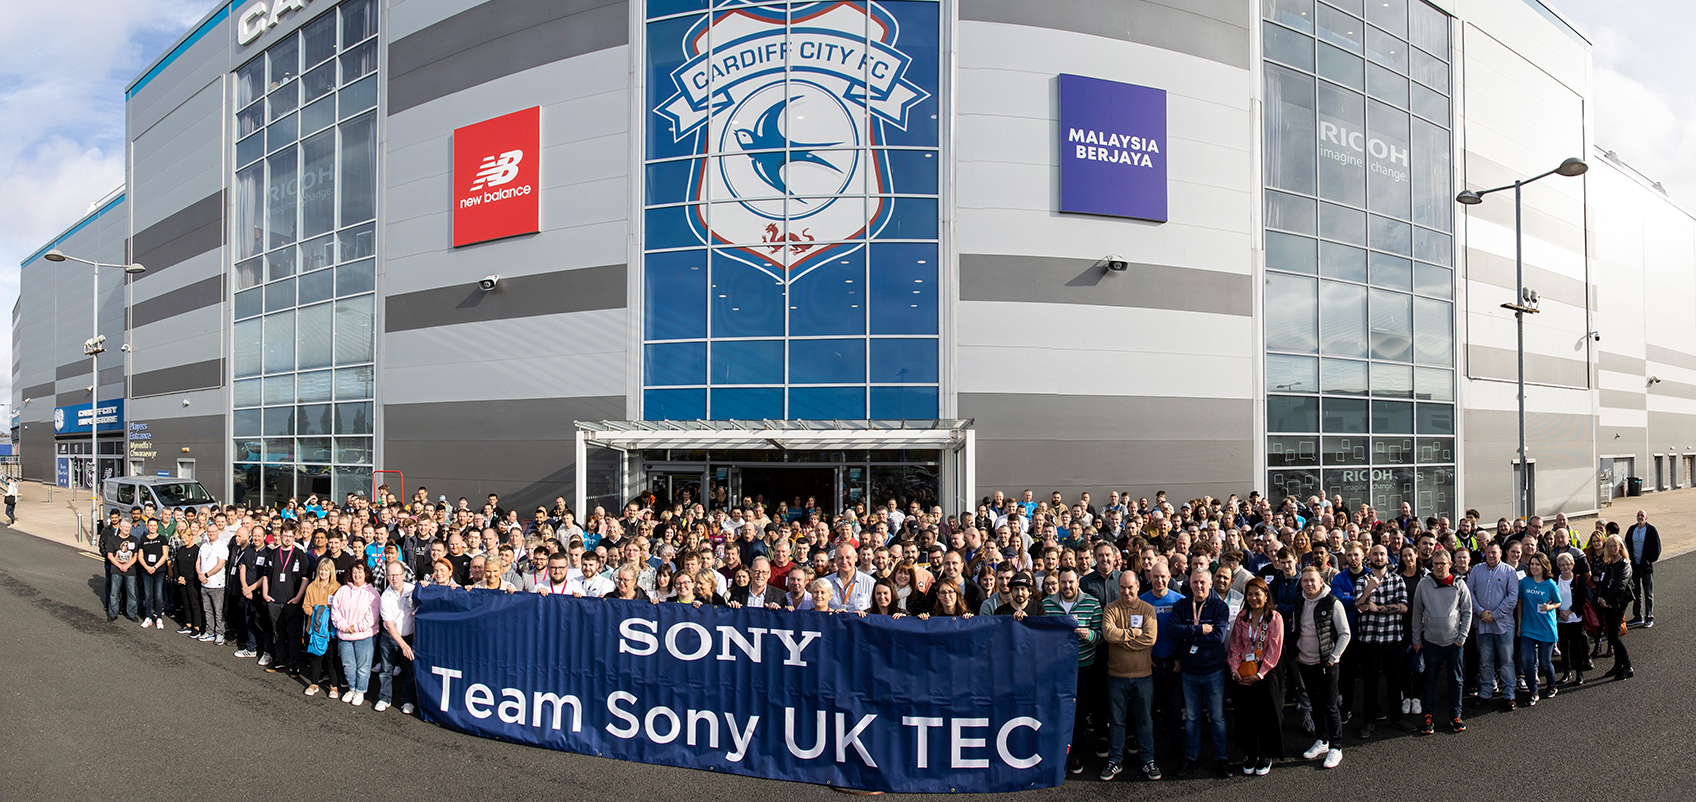 建物の前に大勢の参加者が集合しており、"Team Sony UK TEC"の文字が記載されている青い横断幕を持っている